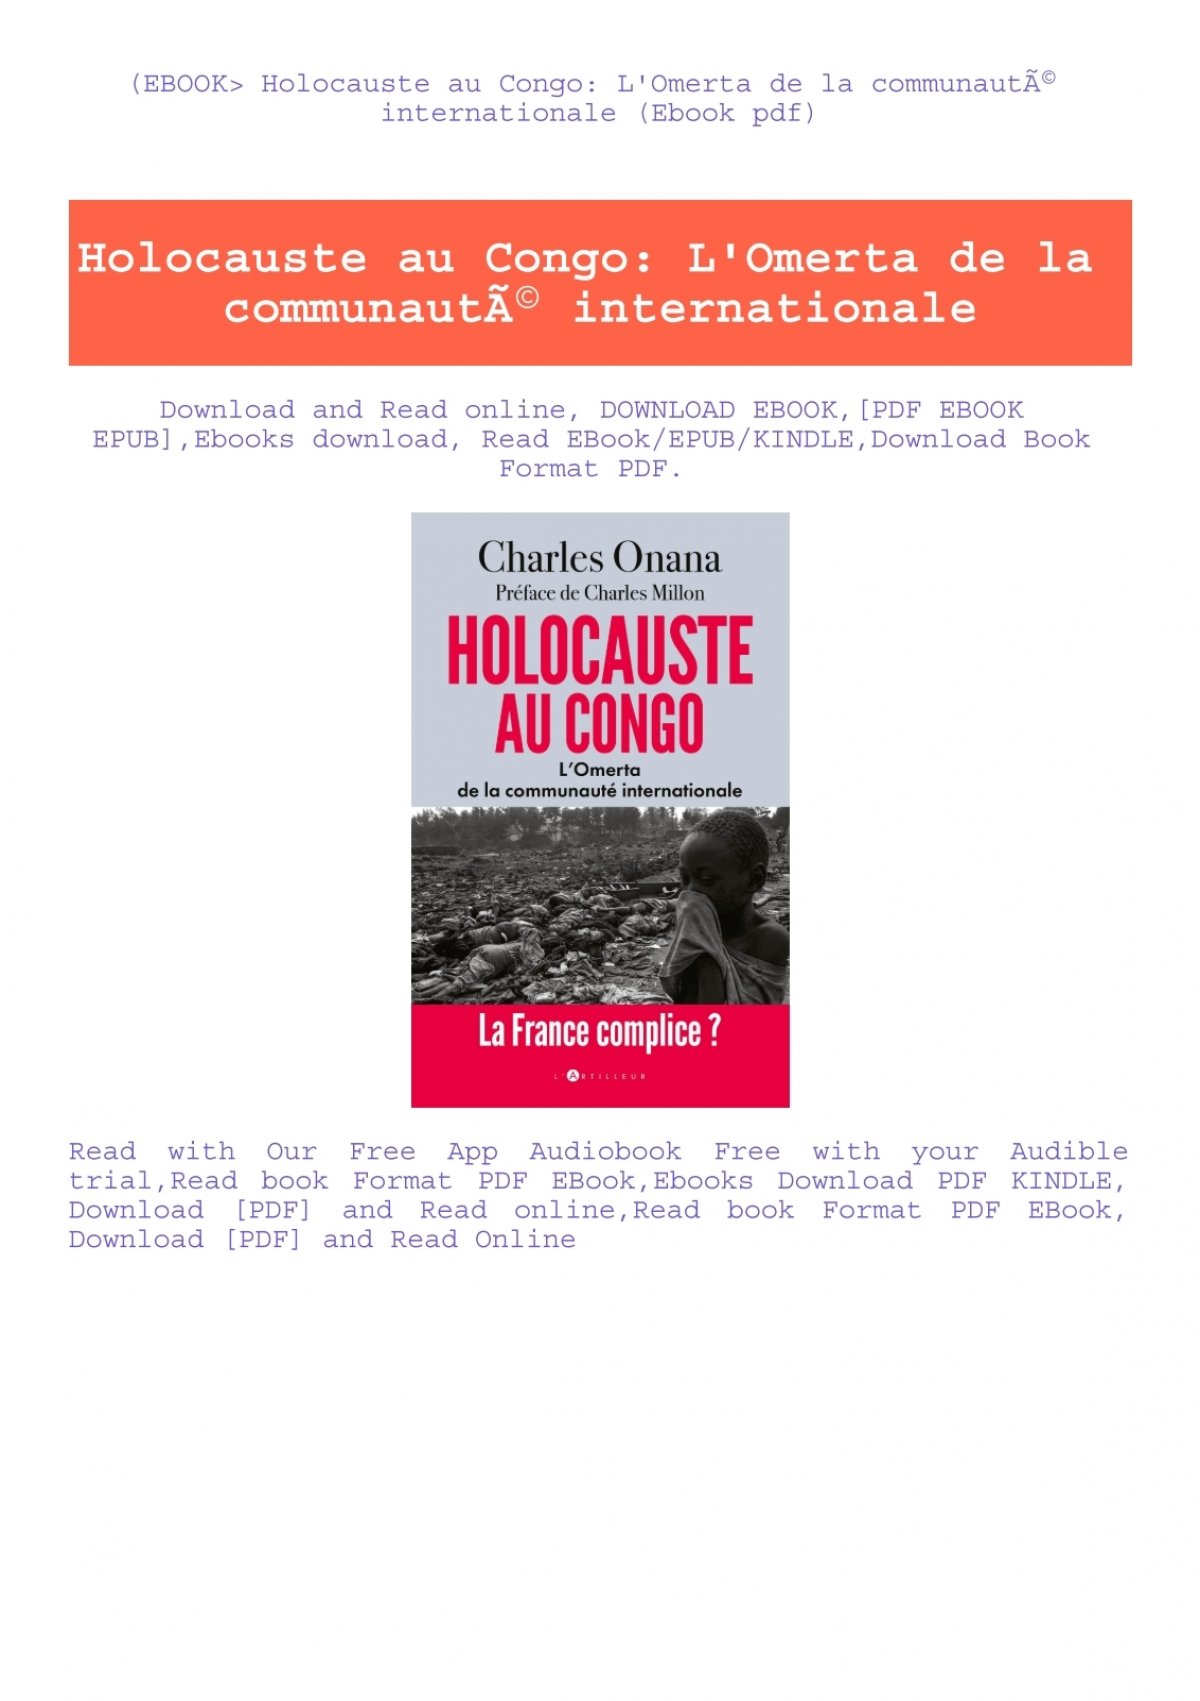 Le livre « Holocauste au Congo : l'Omerta de la communauté